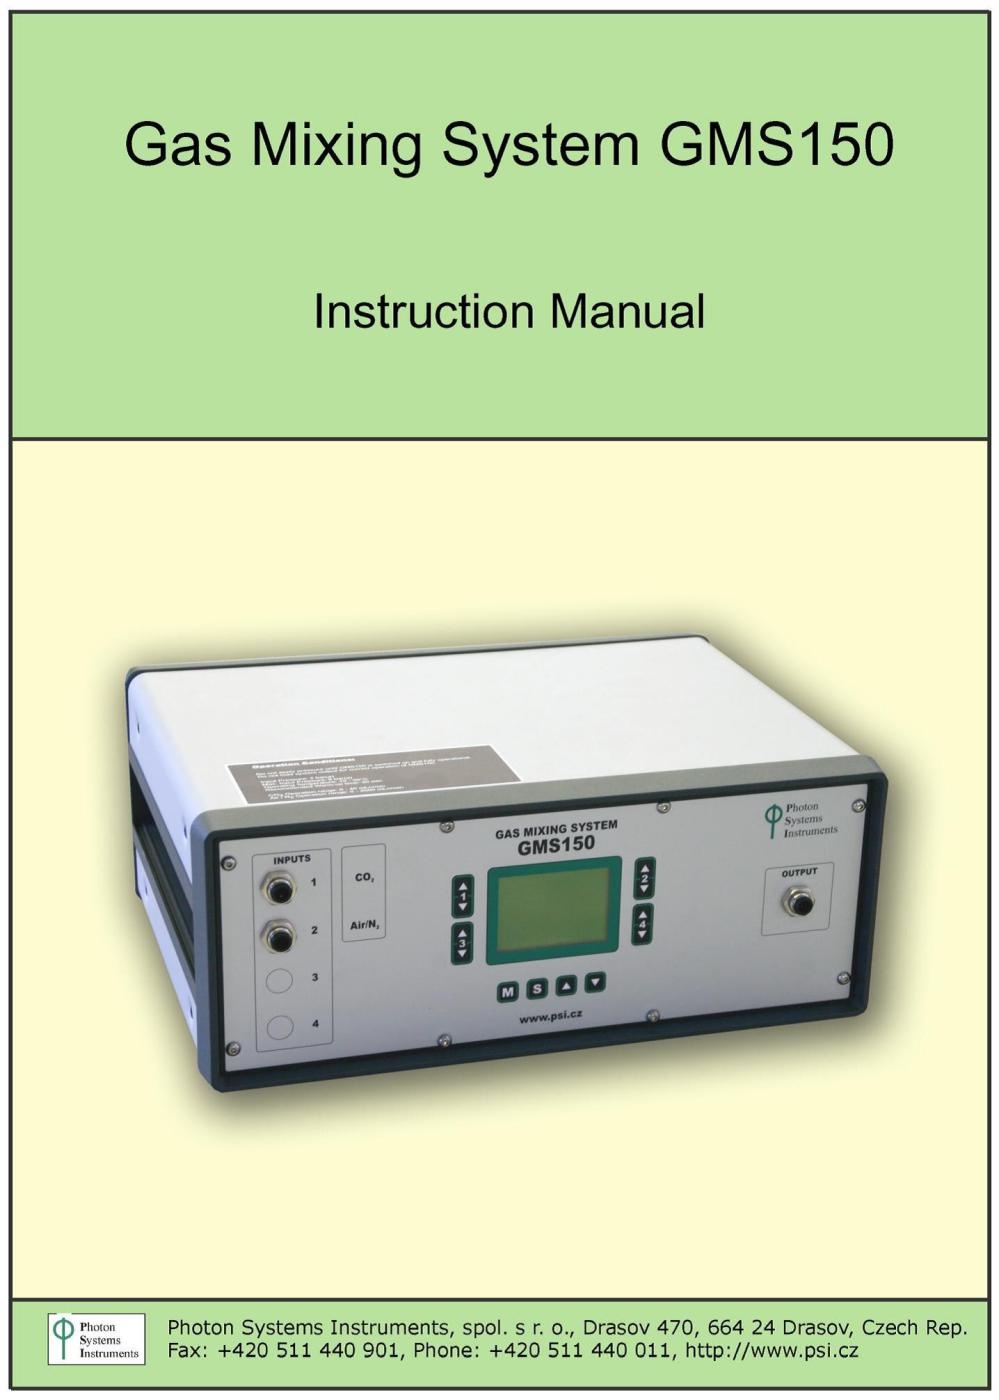 GMS150高精度气体调控系统的图片